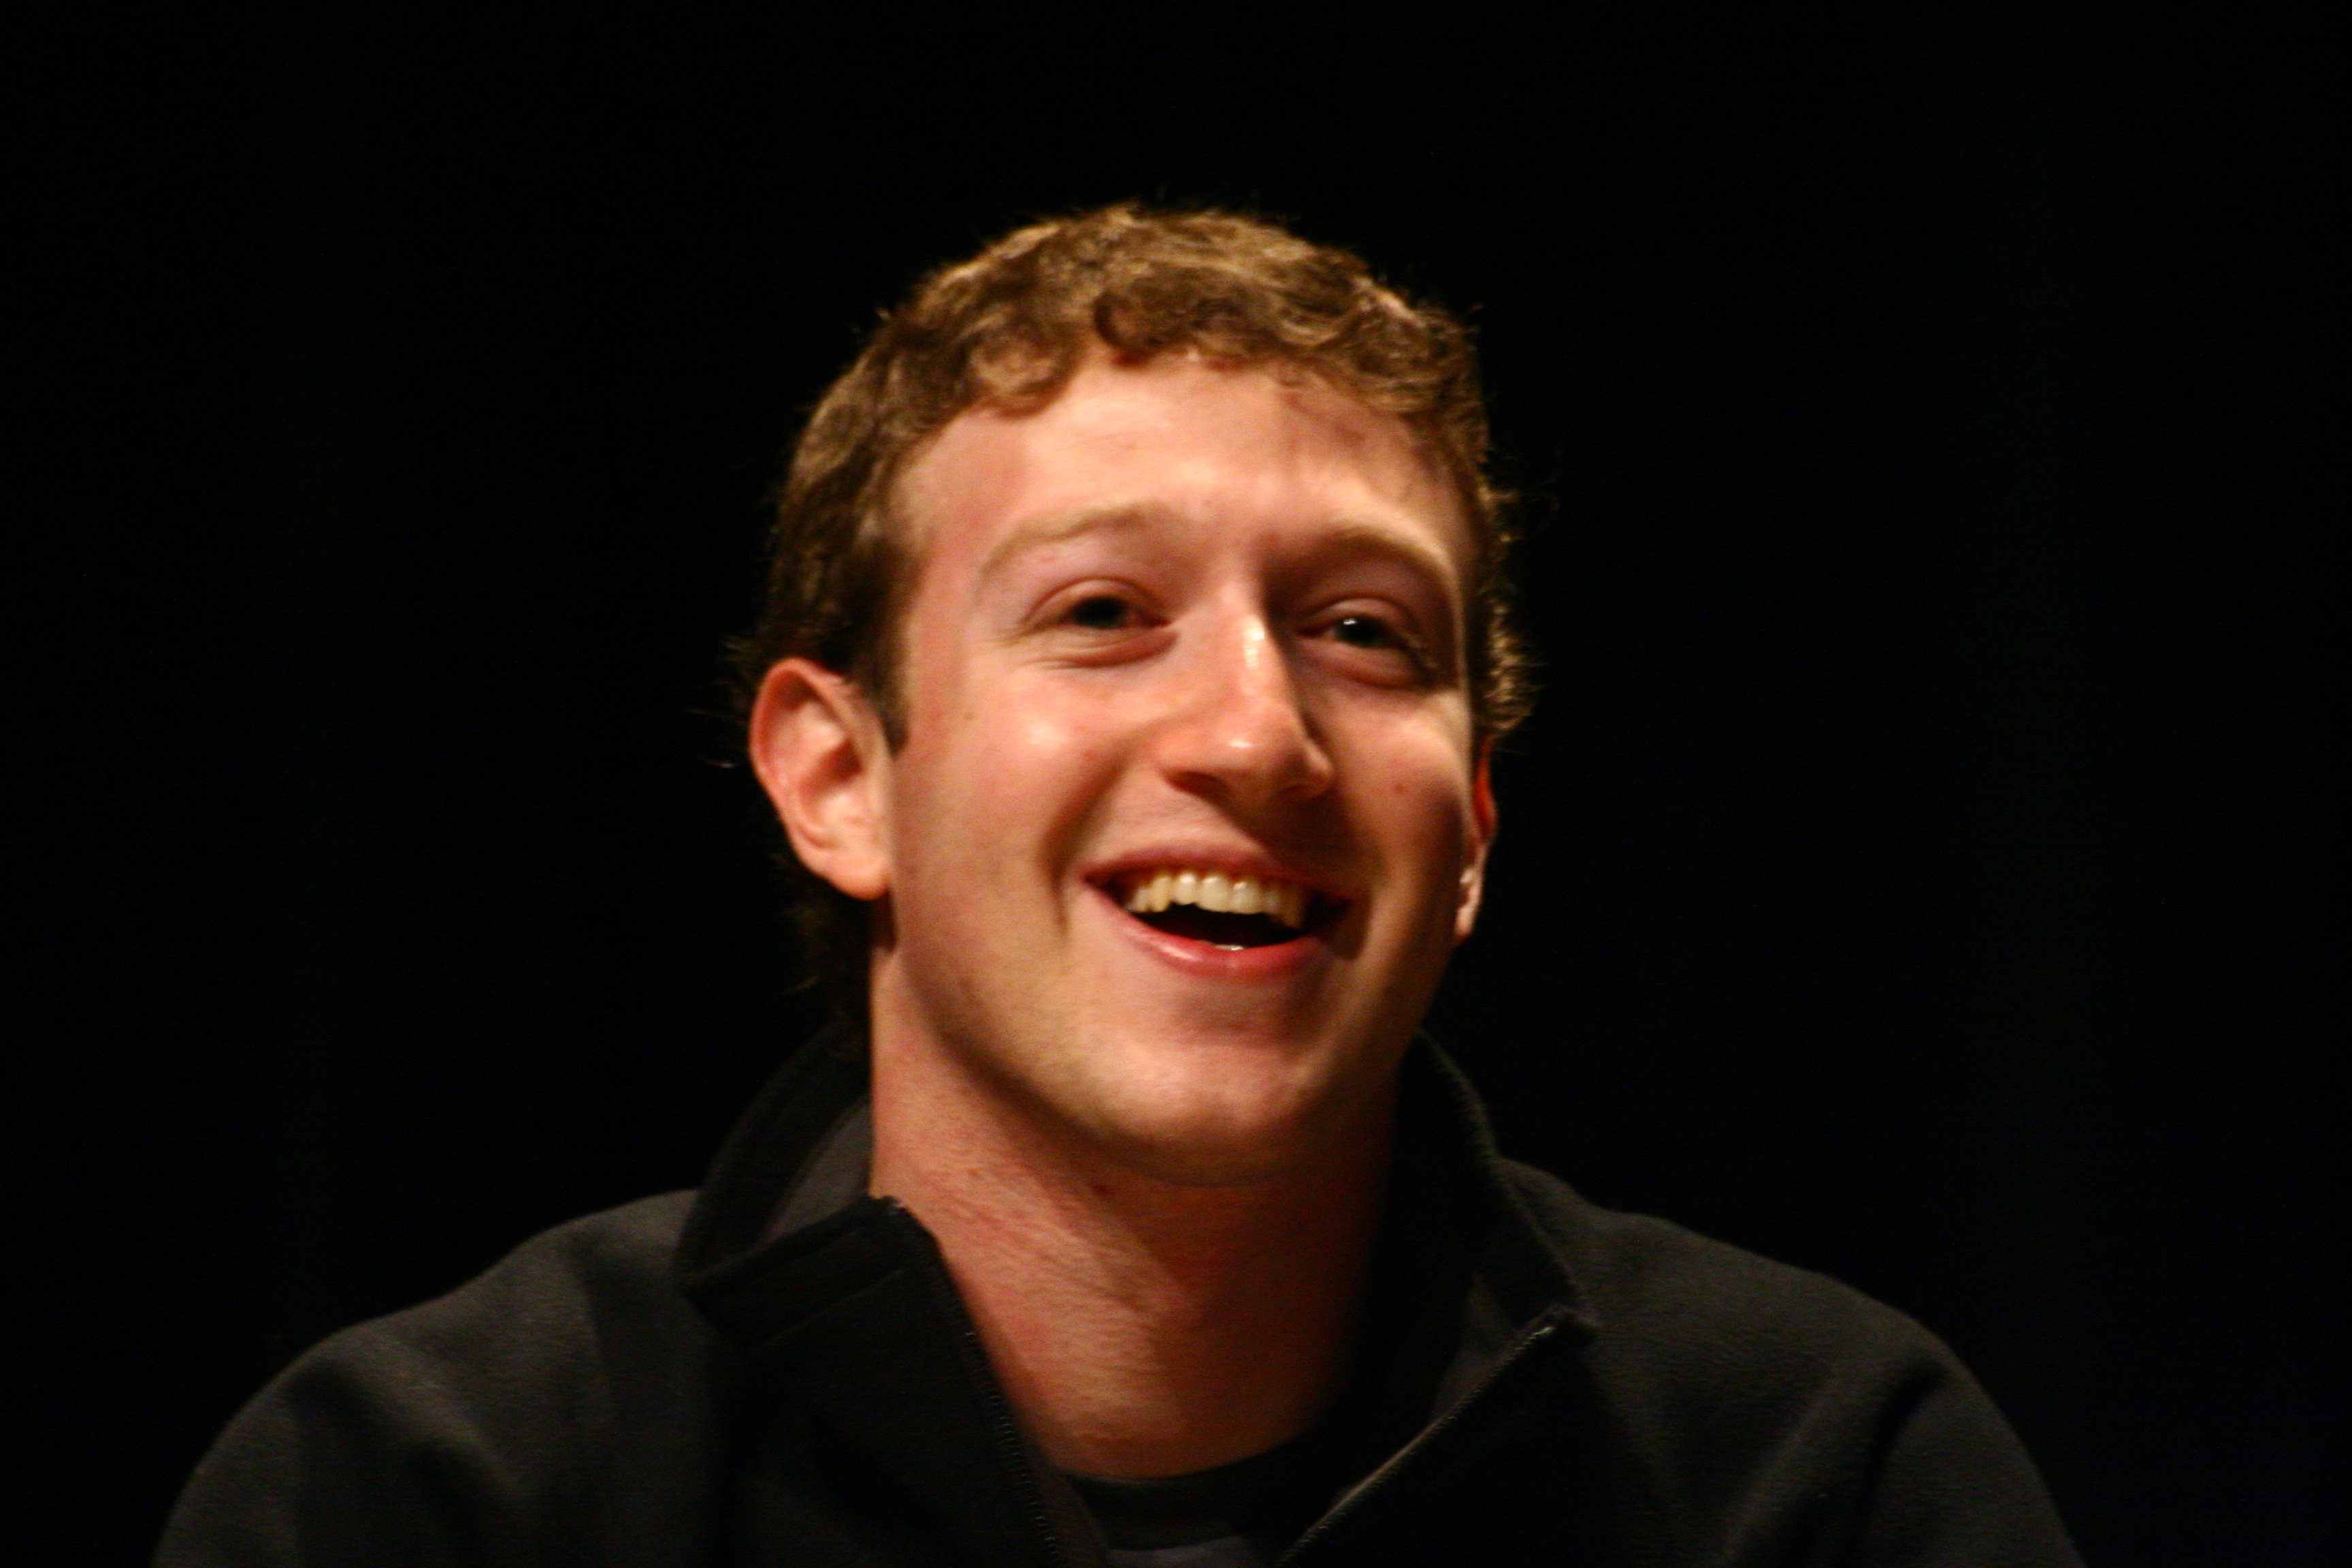 Mark Zuckerberg har tidligere uttalt at han ønsker å sette 99 prosent av sin del av Facebook inn i et filantropisk prosjekt for likhet og menneskets utvikling.